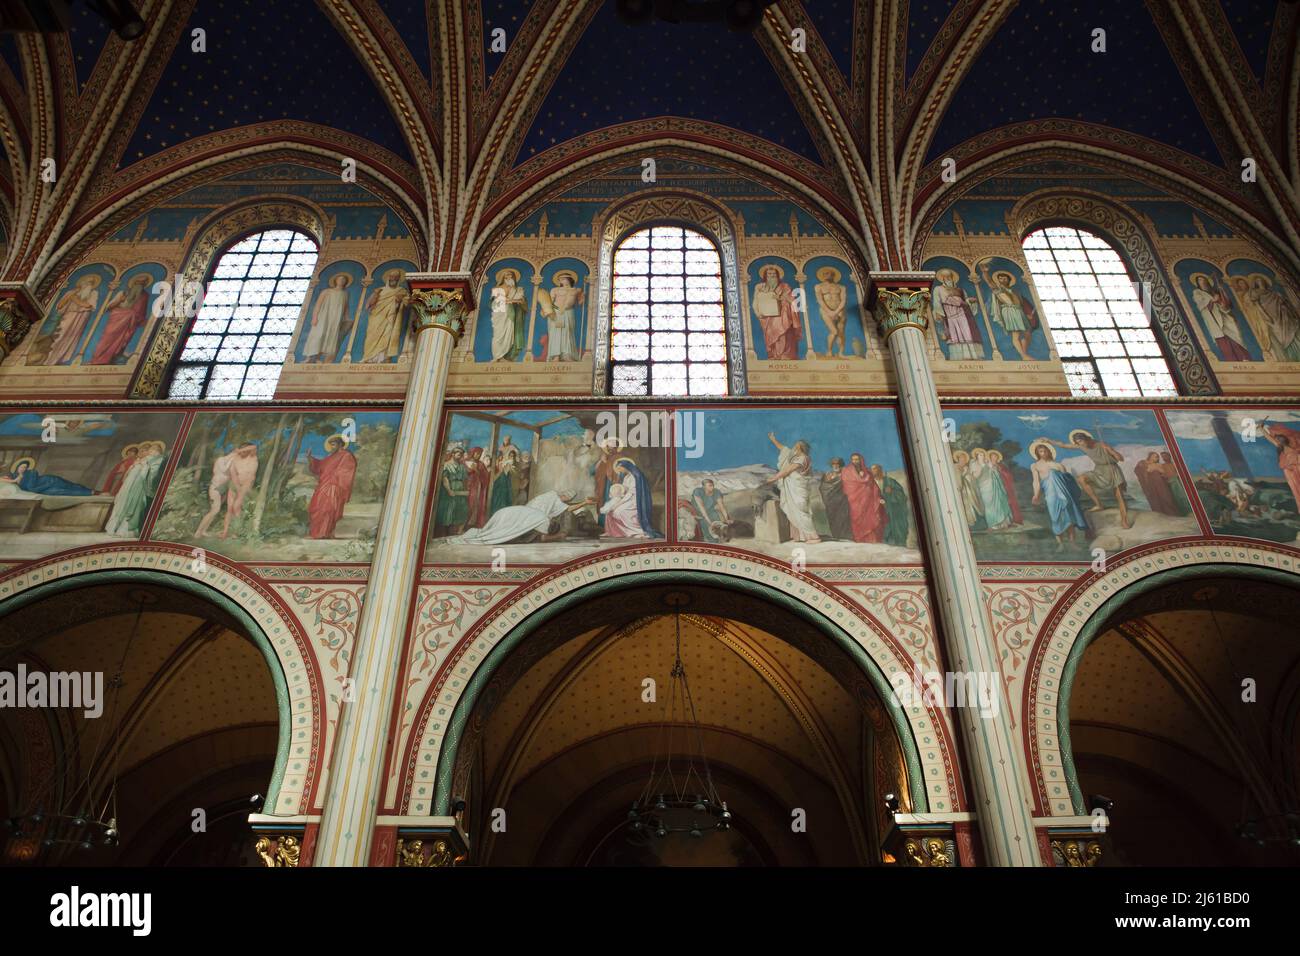 Dipinti murali del pittore francese Jean-Hippolyte Flandrin (1856-1863) nella navata principale della Chiesa di Saint-Germain-des-Prés a Parigi, Francia. Foto Stock